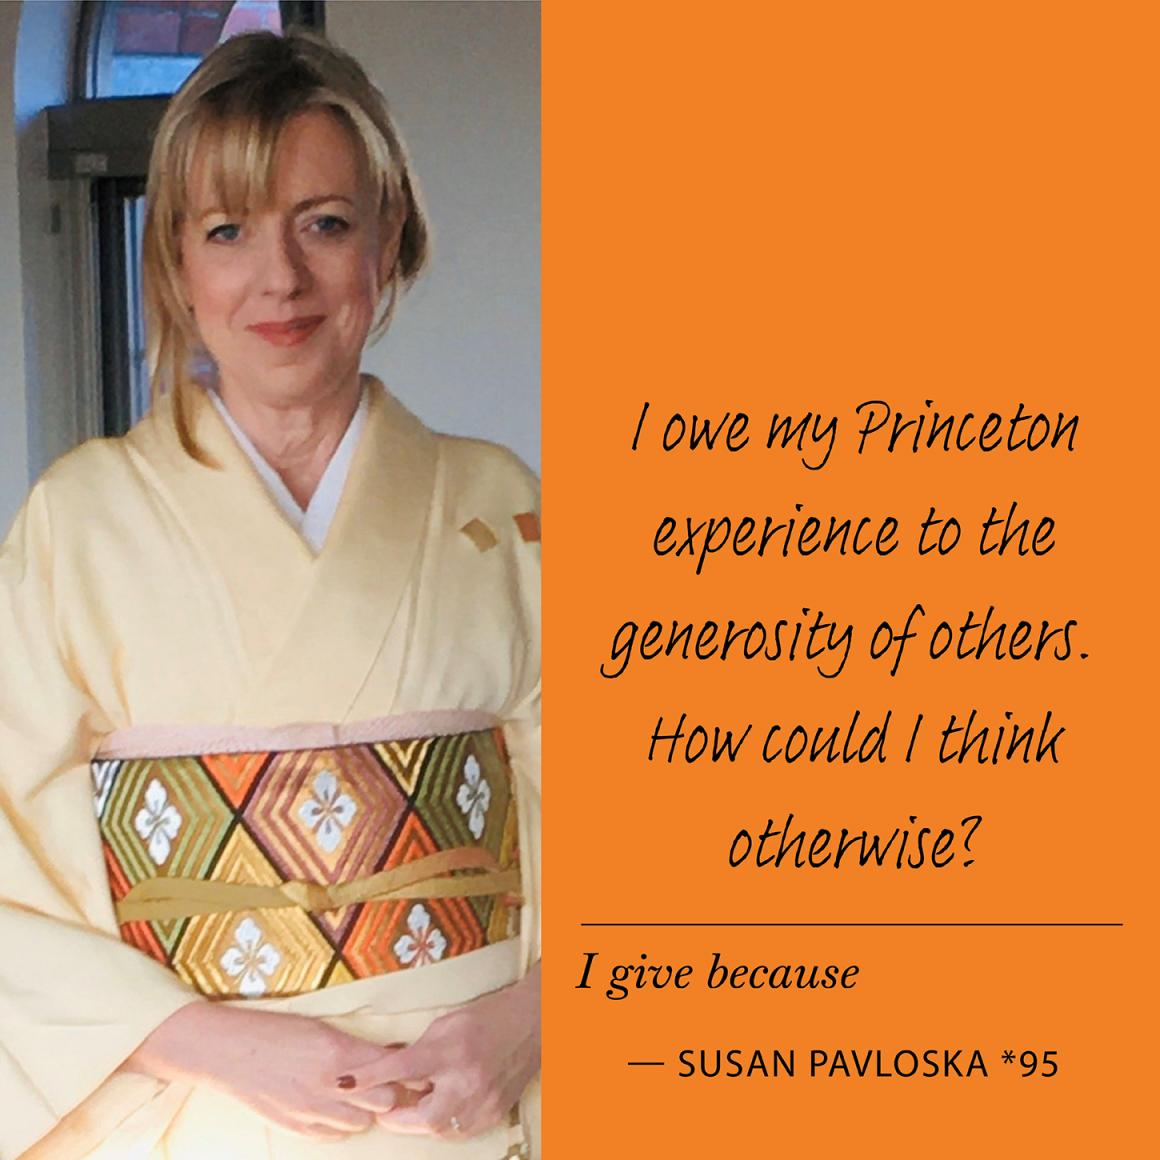 Susan Pavloska *95